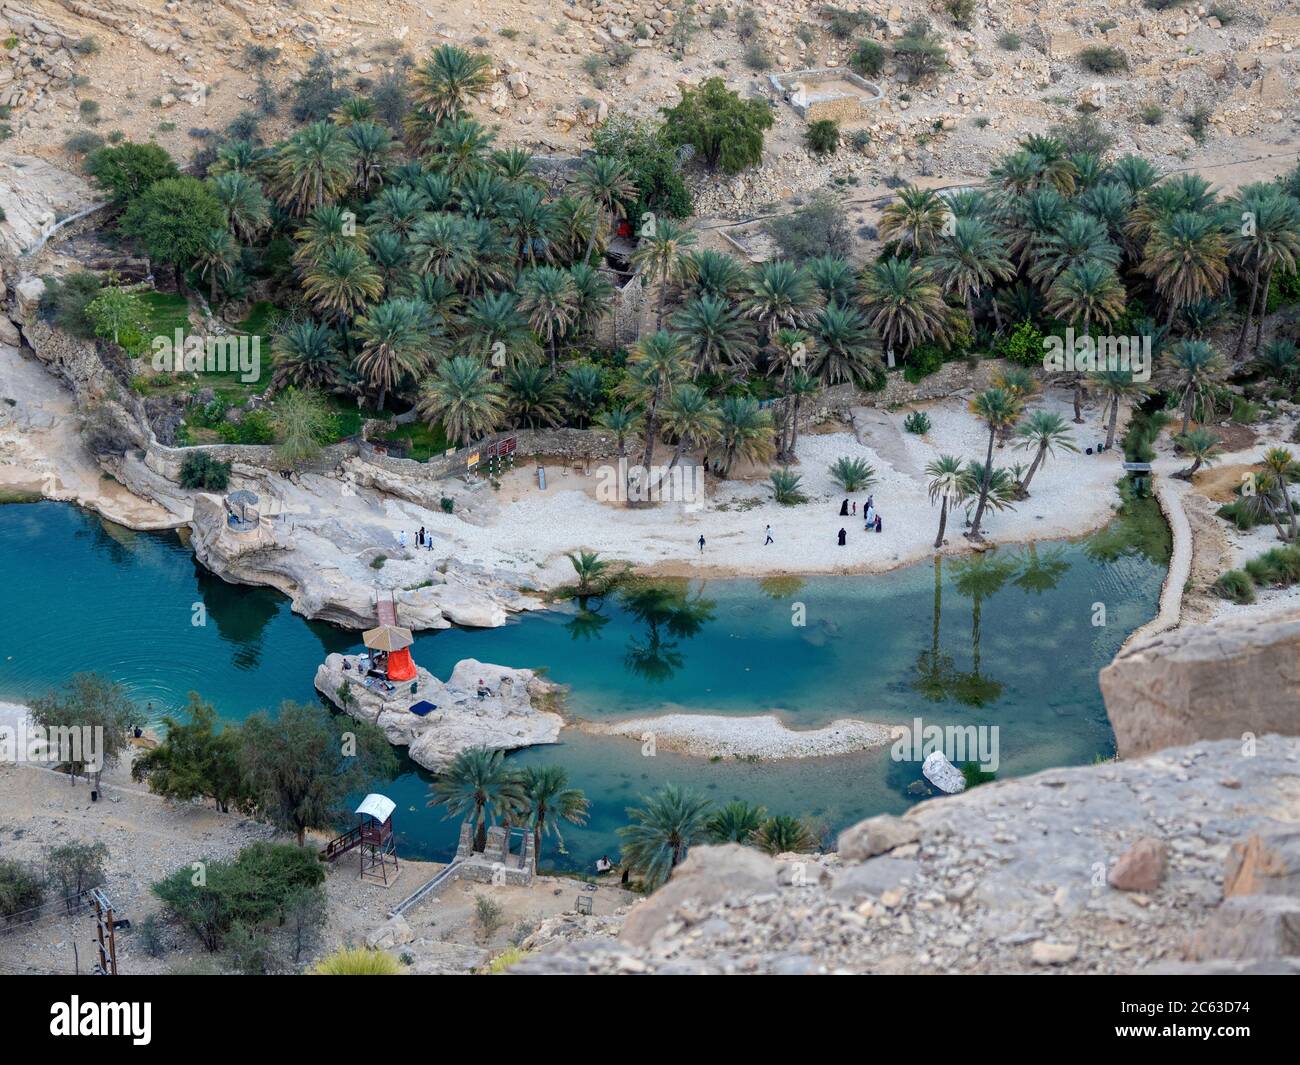 Piscinas naturales formadas por aguas de inundación en Wadi Bani Khalid, Sultanato de Omán. Foto de stock